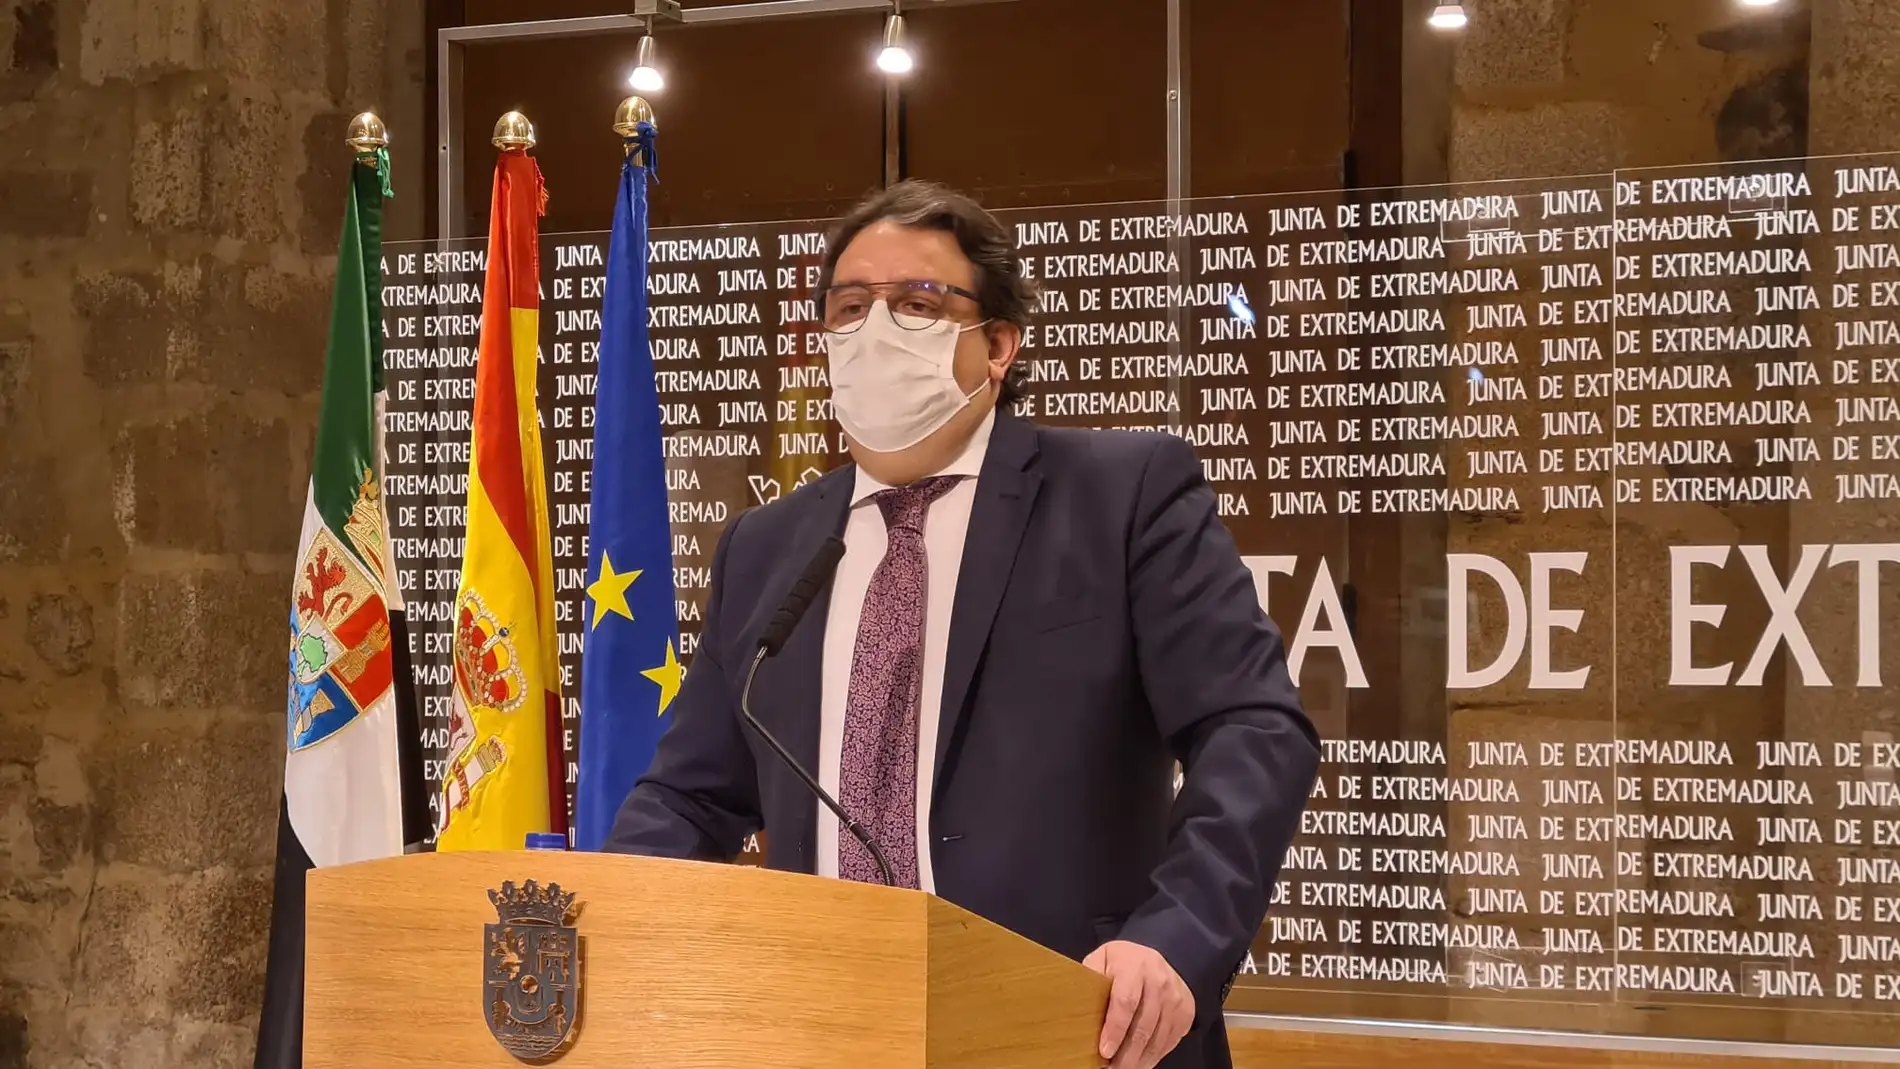 Extremadura relaja las restricciones contra el coronavirus y levanta el confinamiento perimetral: estas son las nuevas medidas aprobadas